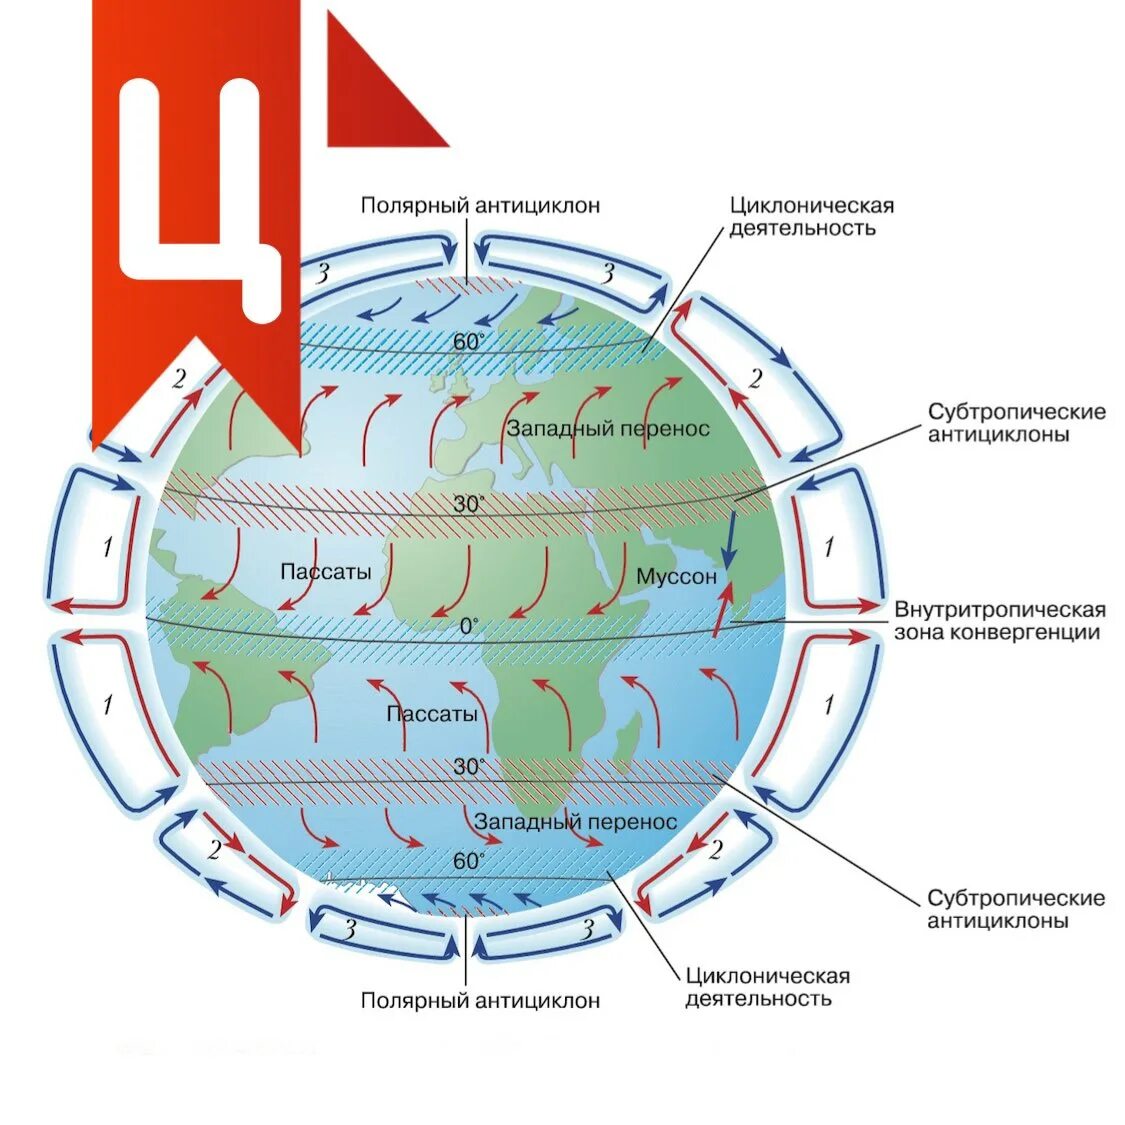 Направление воздушных течений. Схема общей циркуляции атмосферы на земле. Схема глобальной циркуляции атмосферы. Схема глабальноц церкульяции отмосыеов. Основные типы циркуляции атмосферы.